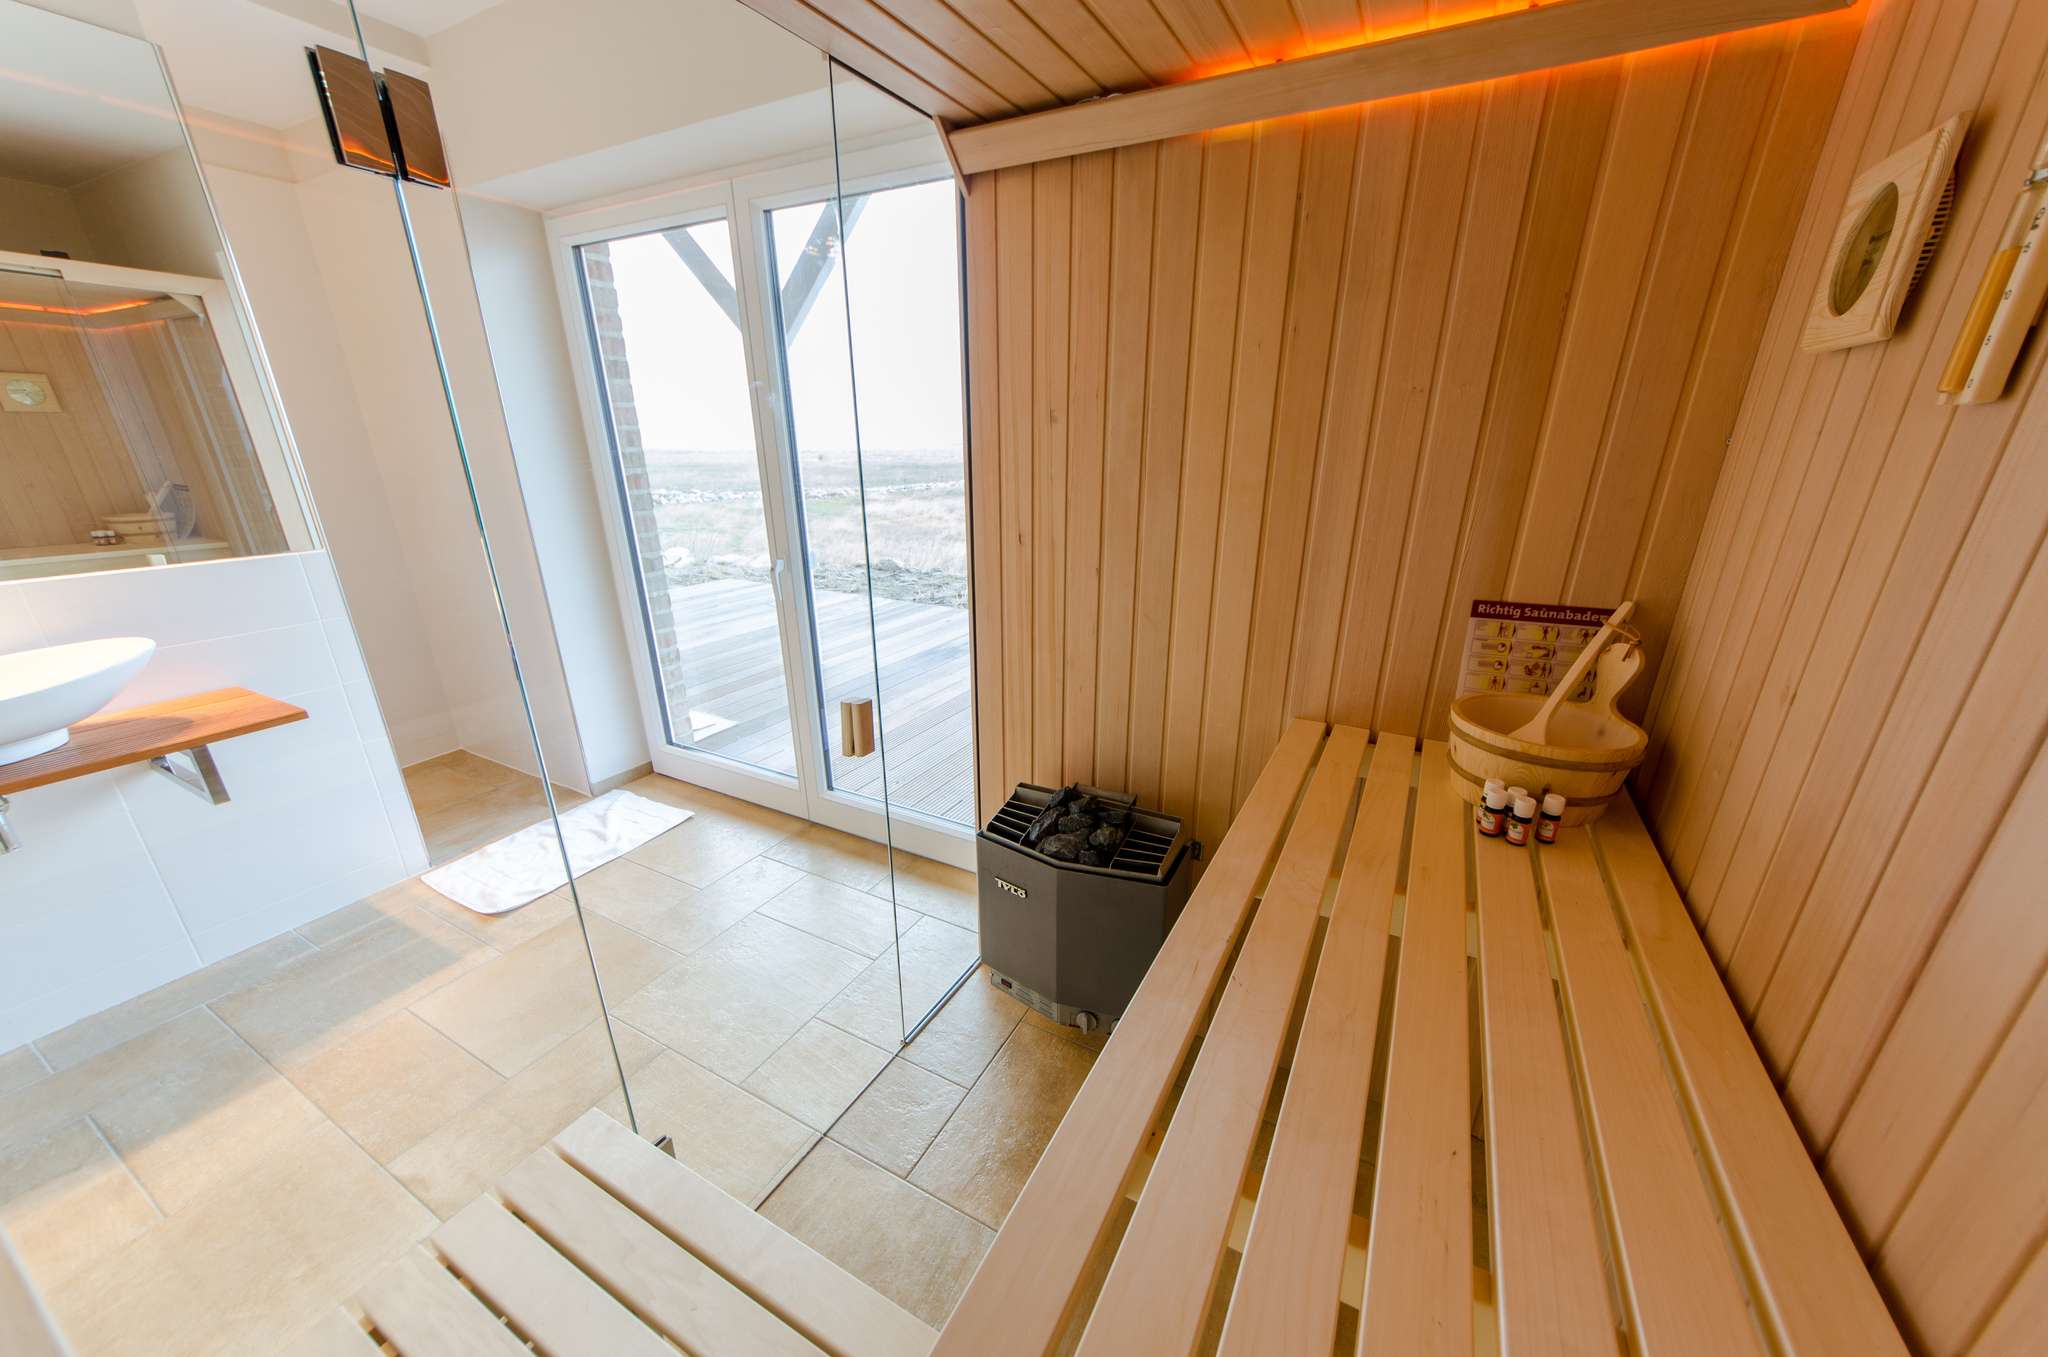 Ferienhaus Auf der Ostsee - Bad im Untergeschoss mit Sauna